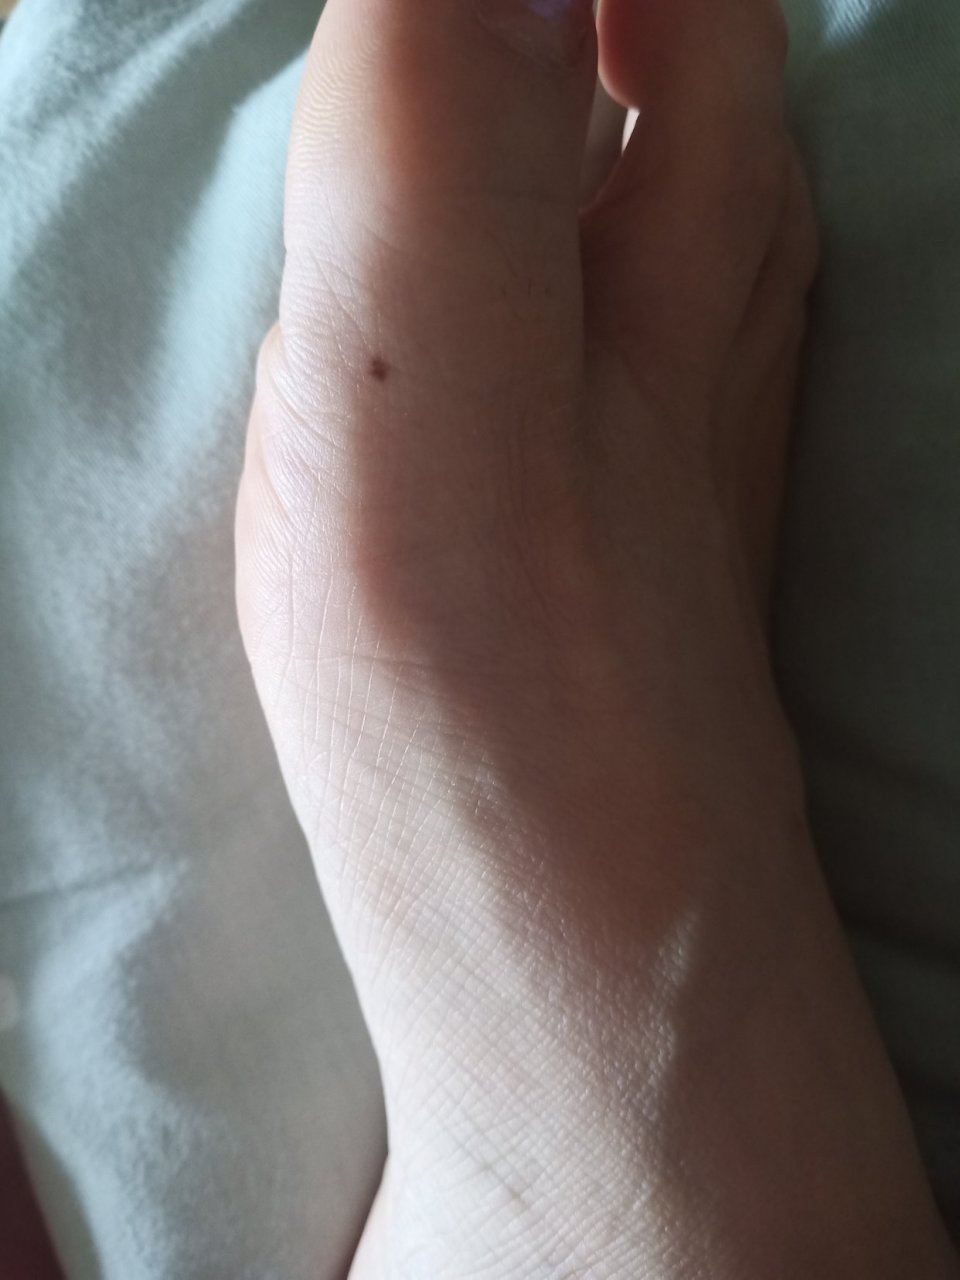 有没有大师,可以帮我看一下脚拇指上这个位置有痣好吗?